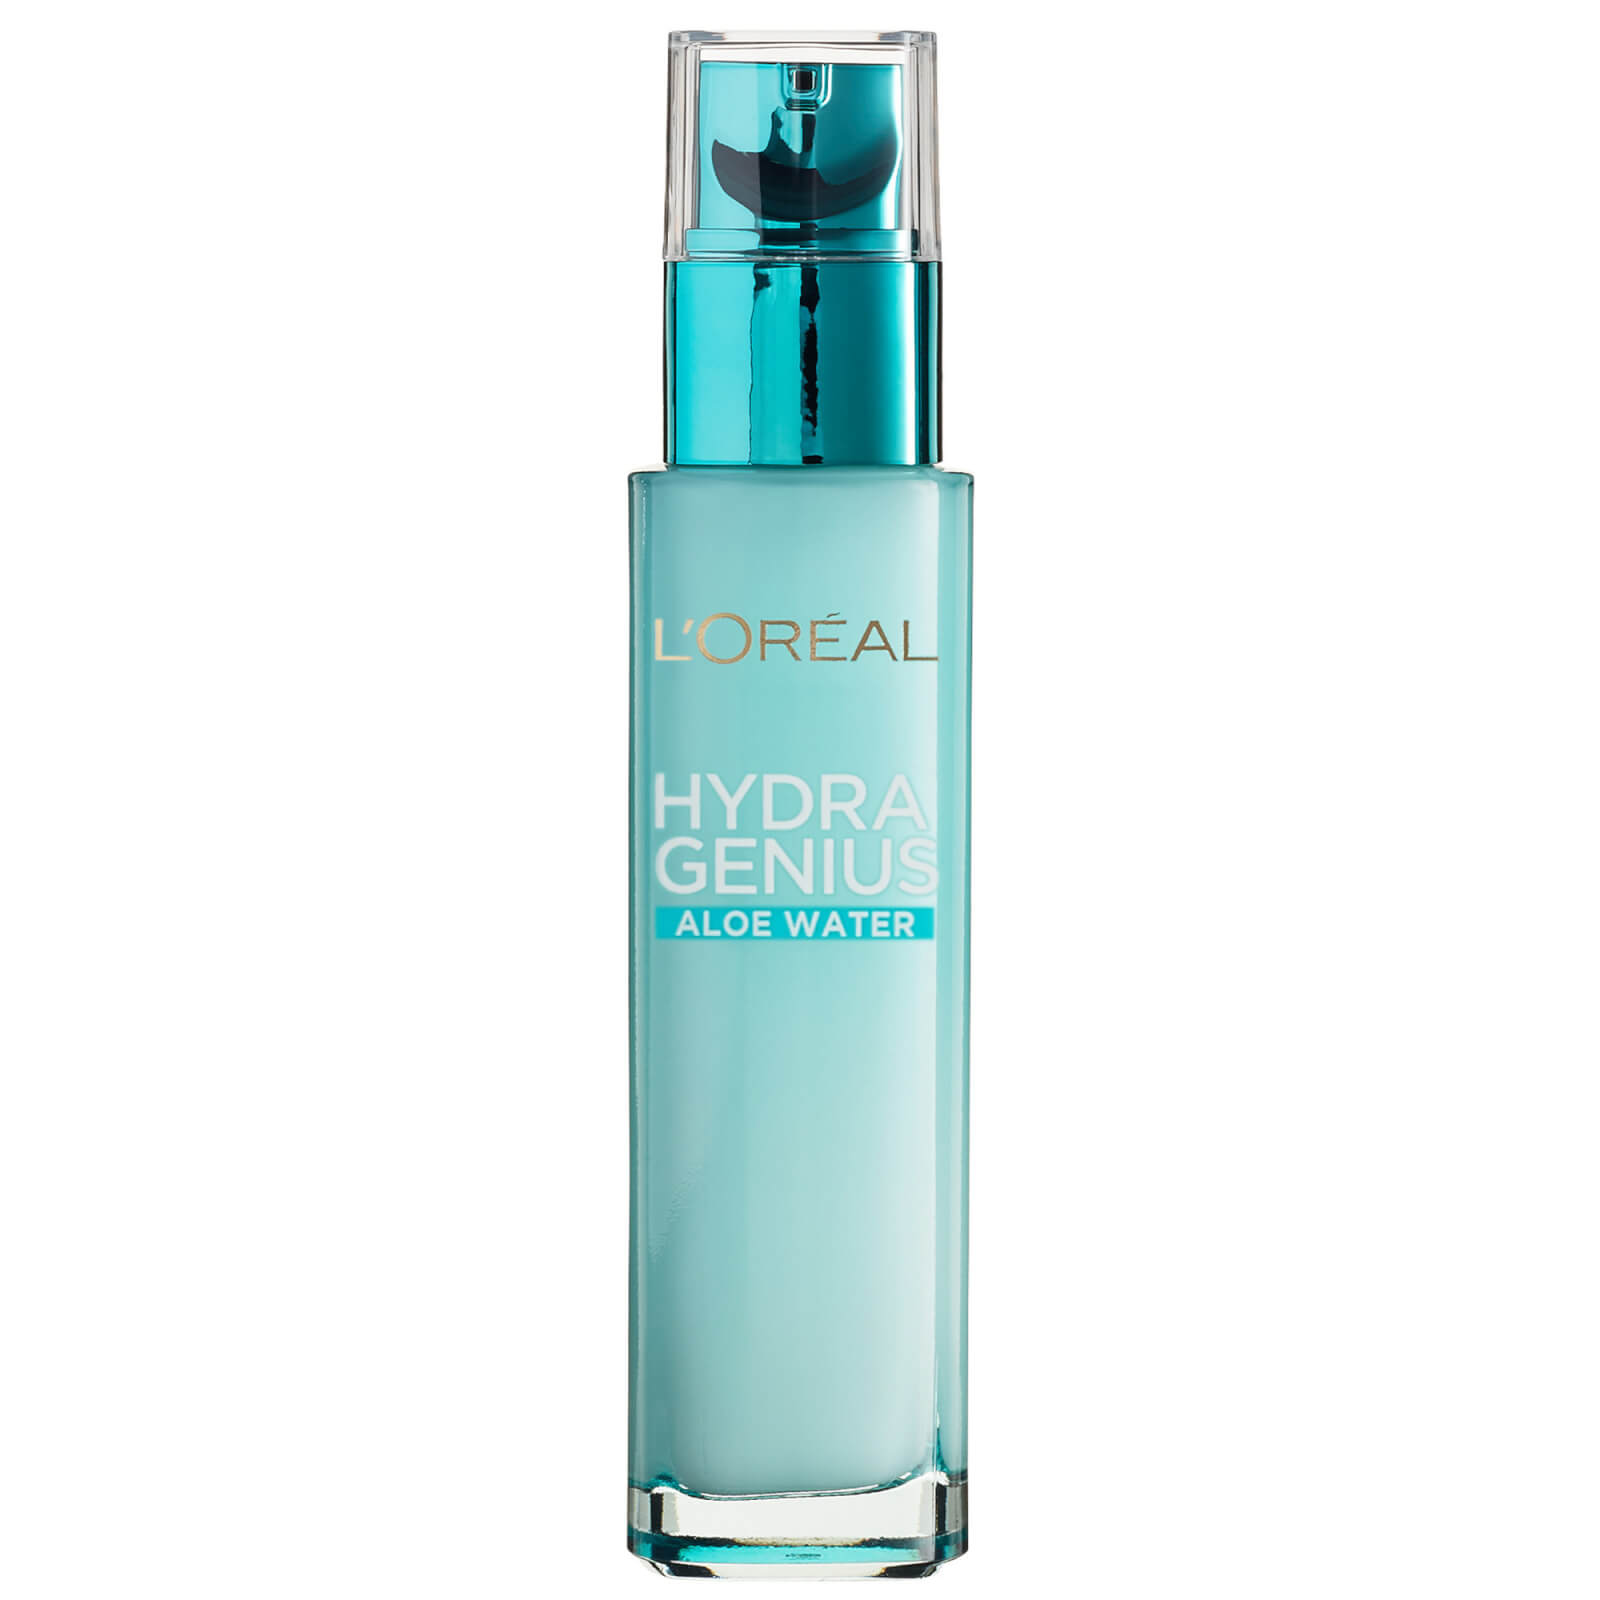 L'Oreal Paris Hydra Genius Liquid Care Moisturiser Sensitive Skin 70ml